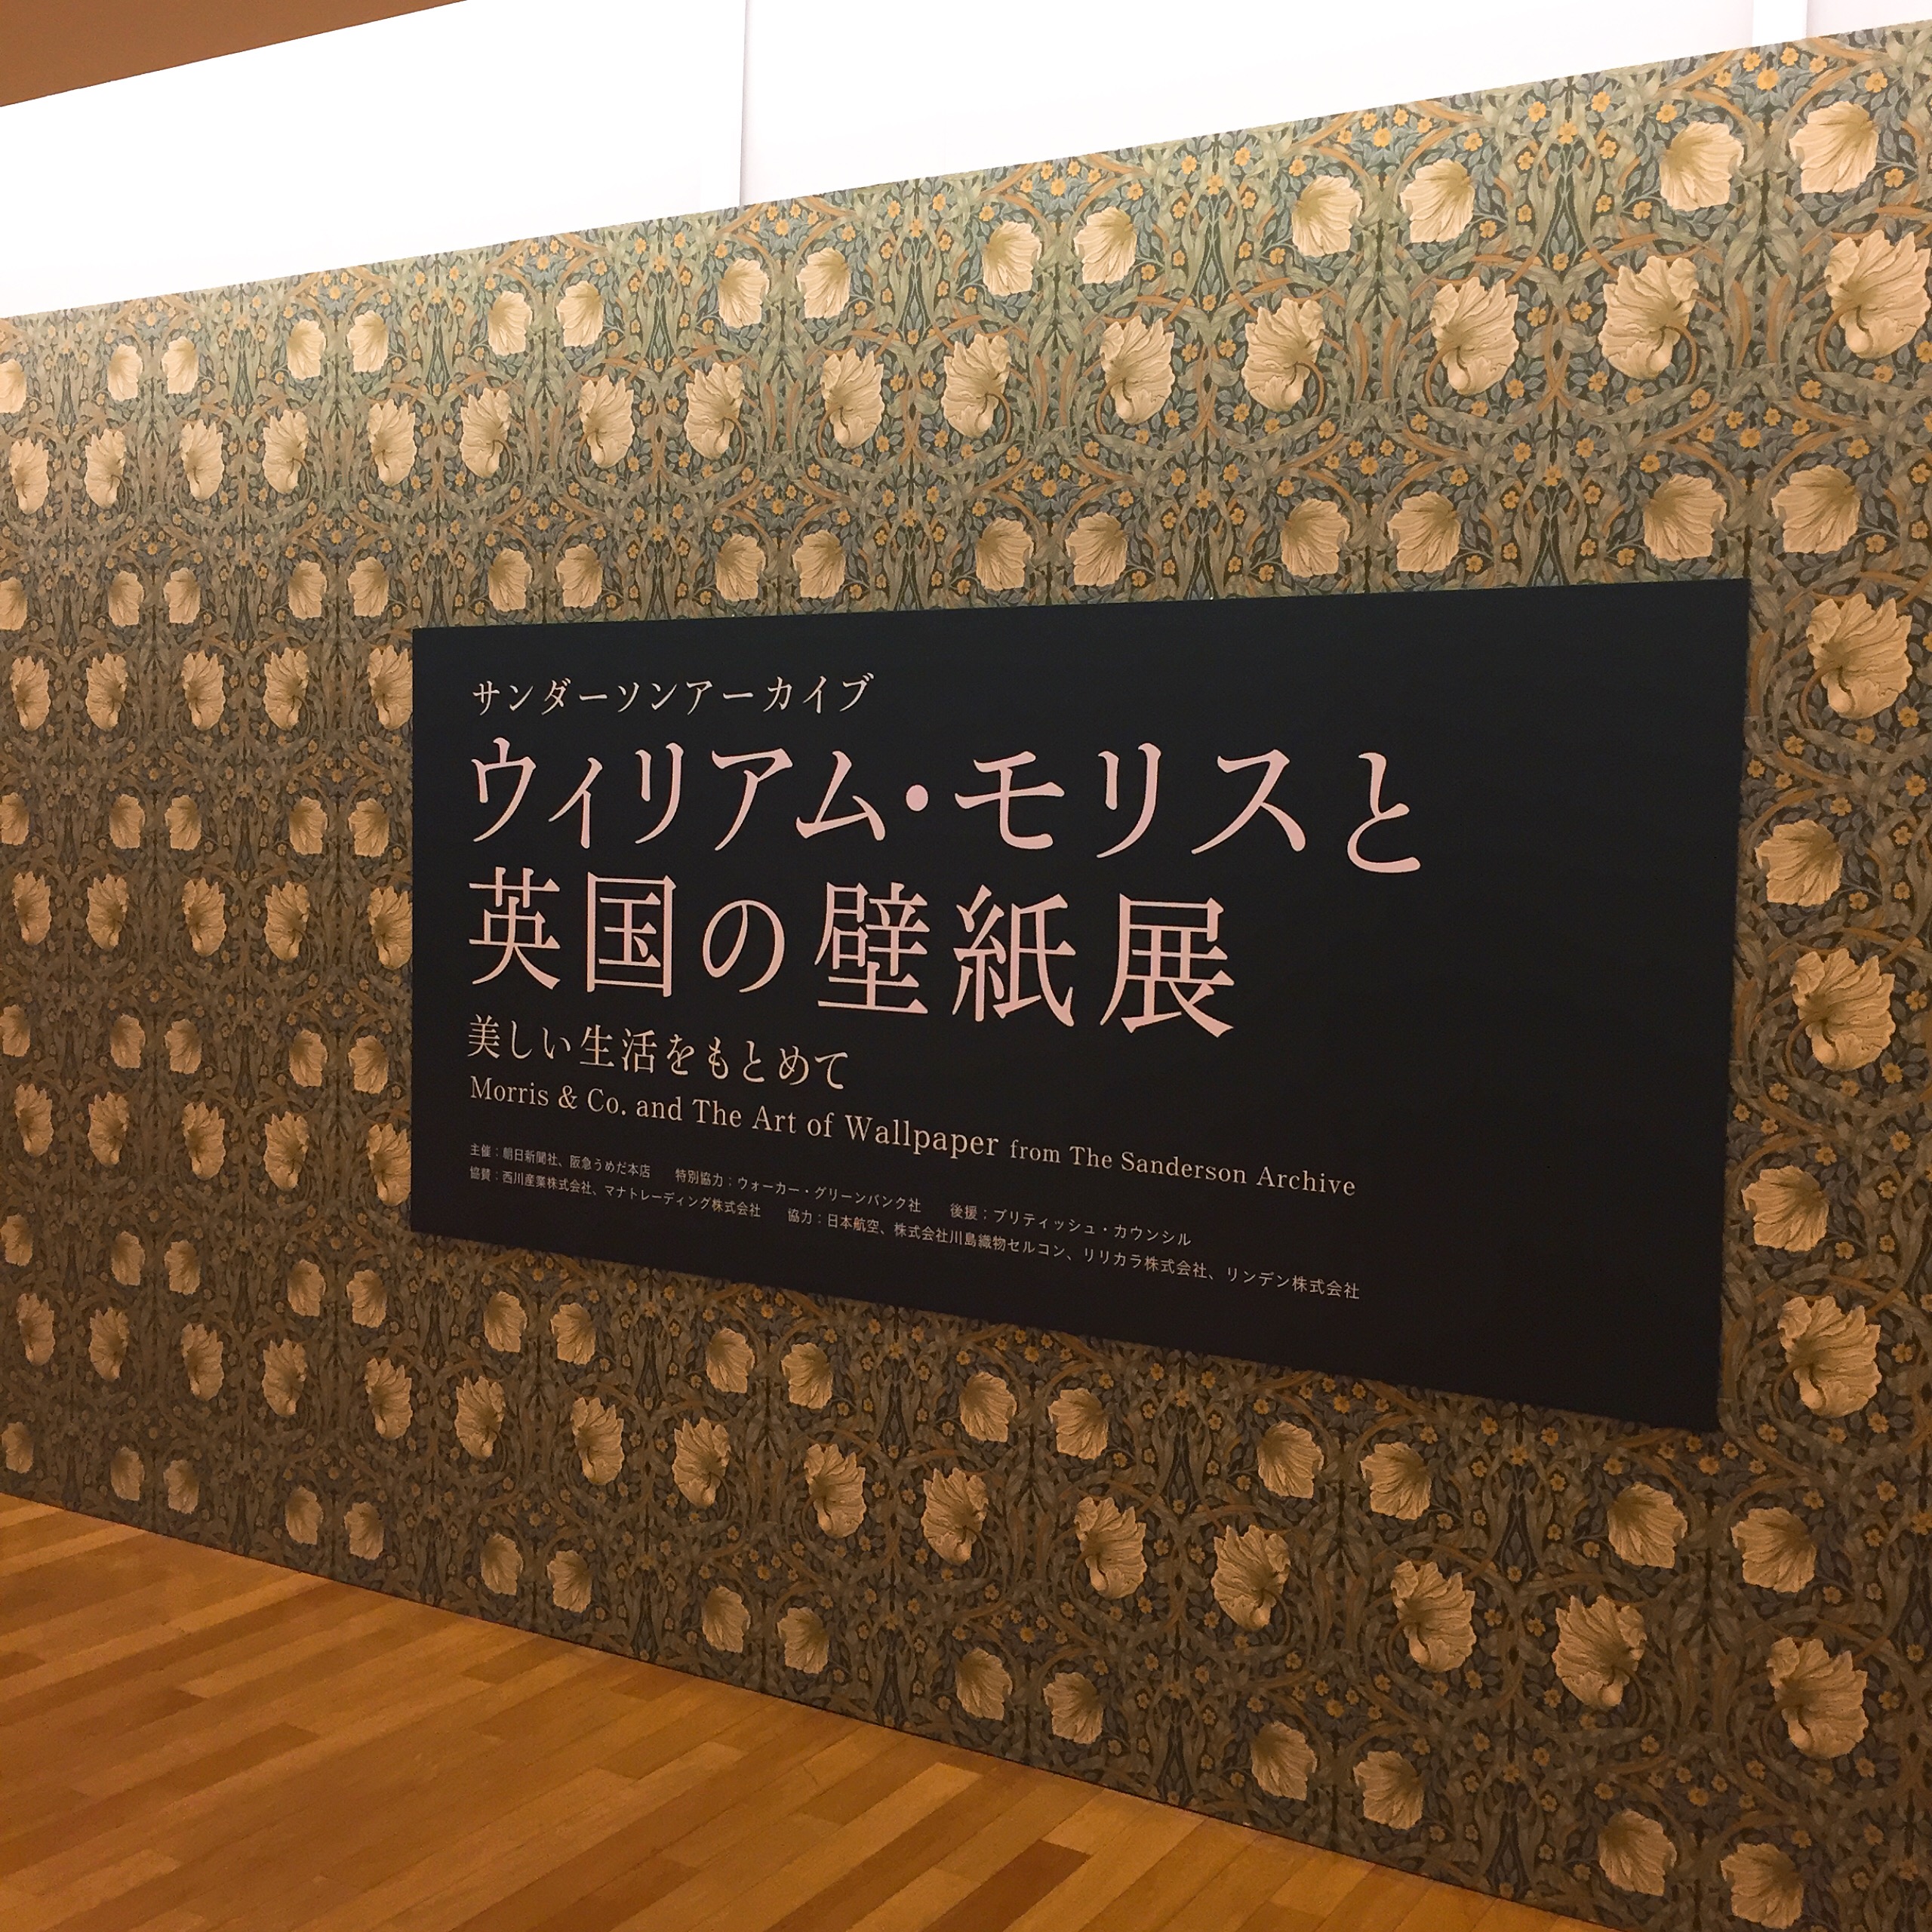 ウィリアム モリスと英国の壁紙展 梅田阪急に行ってきました ブログ 輸入壁紙施工専門の株式会社walls